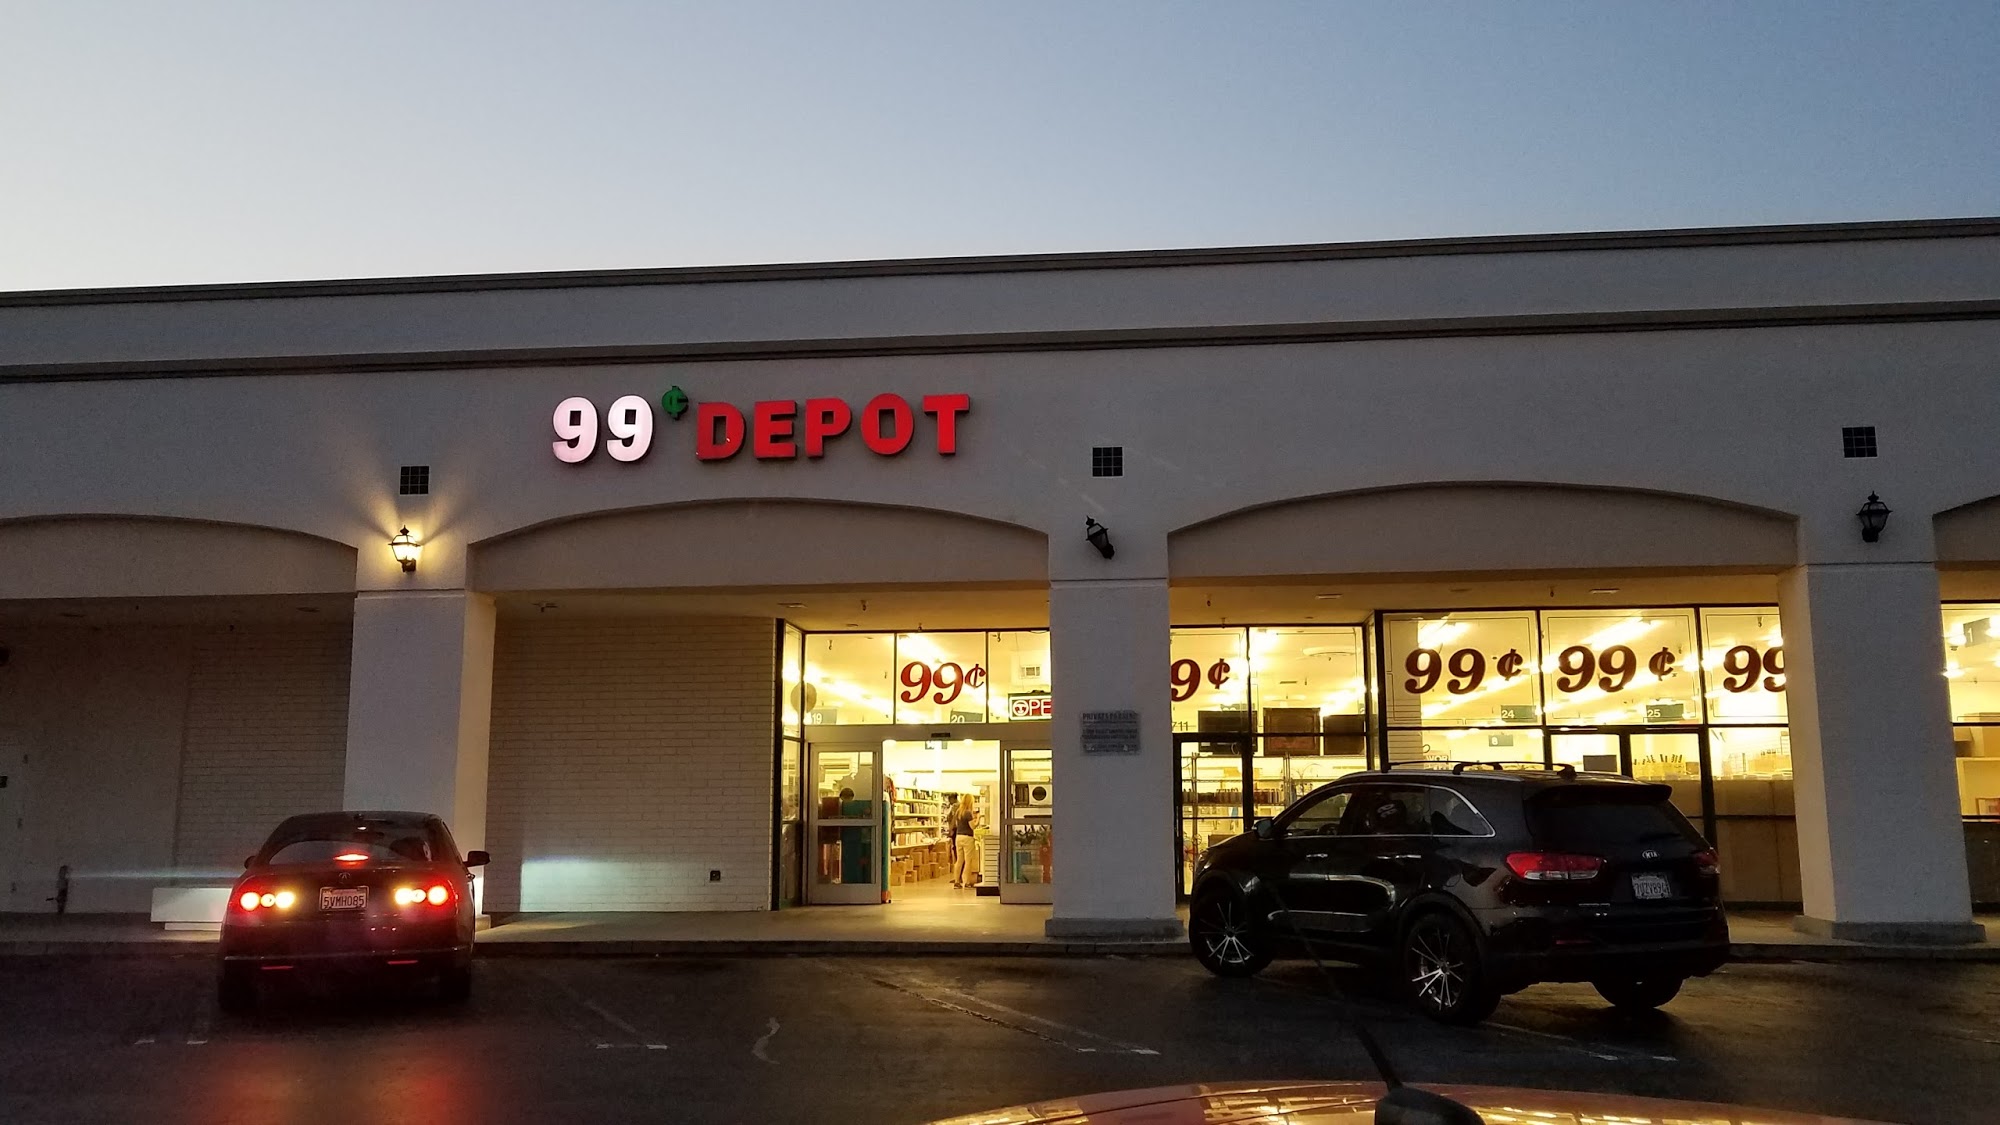 99¢ Depot